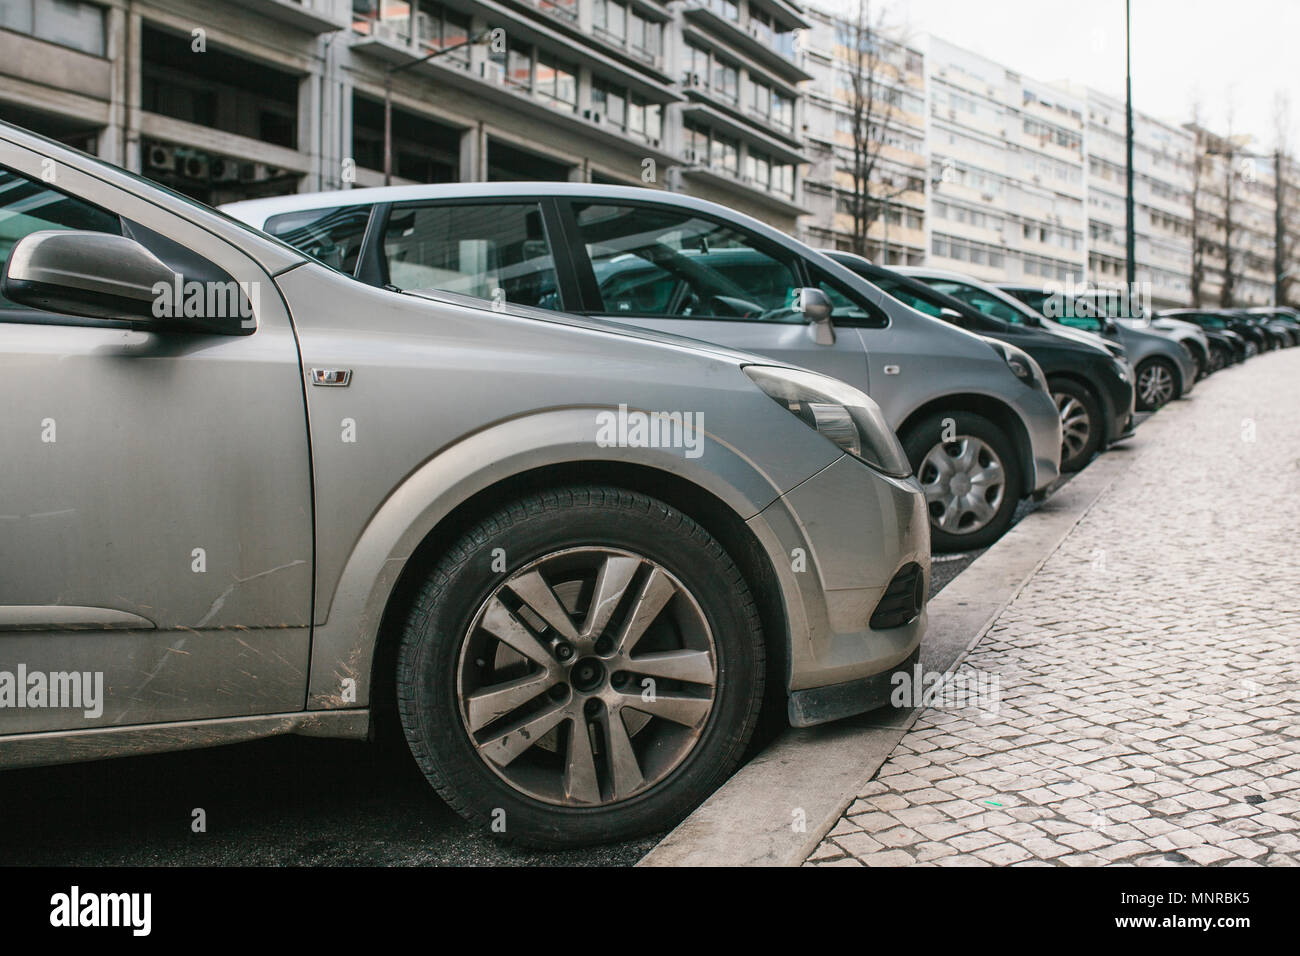 Parking gratuit dans la rue avec des voitures à Lisbonne, Portugal.  Voitures en stationnement sur rue. Pénalités pour paiement et parking pour  garer la voiture Photo Stock - Alamy